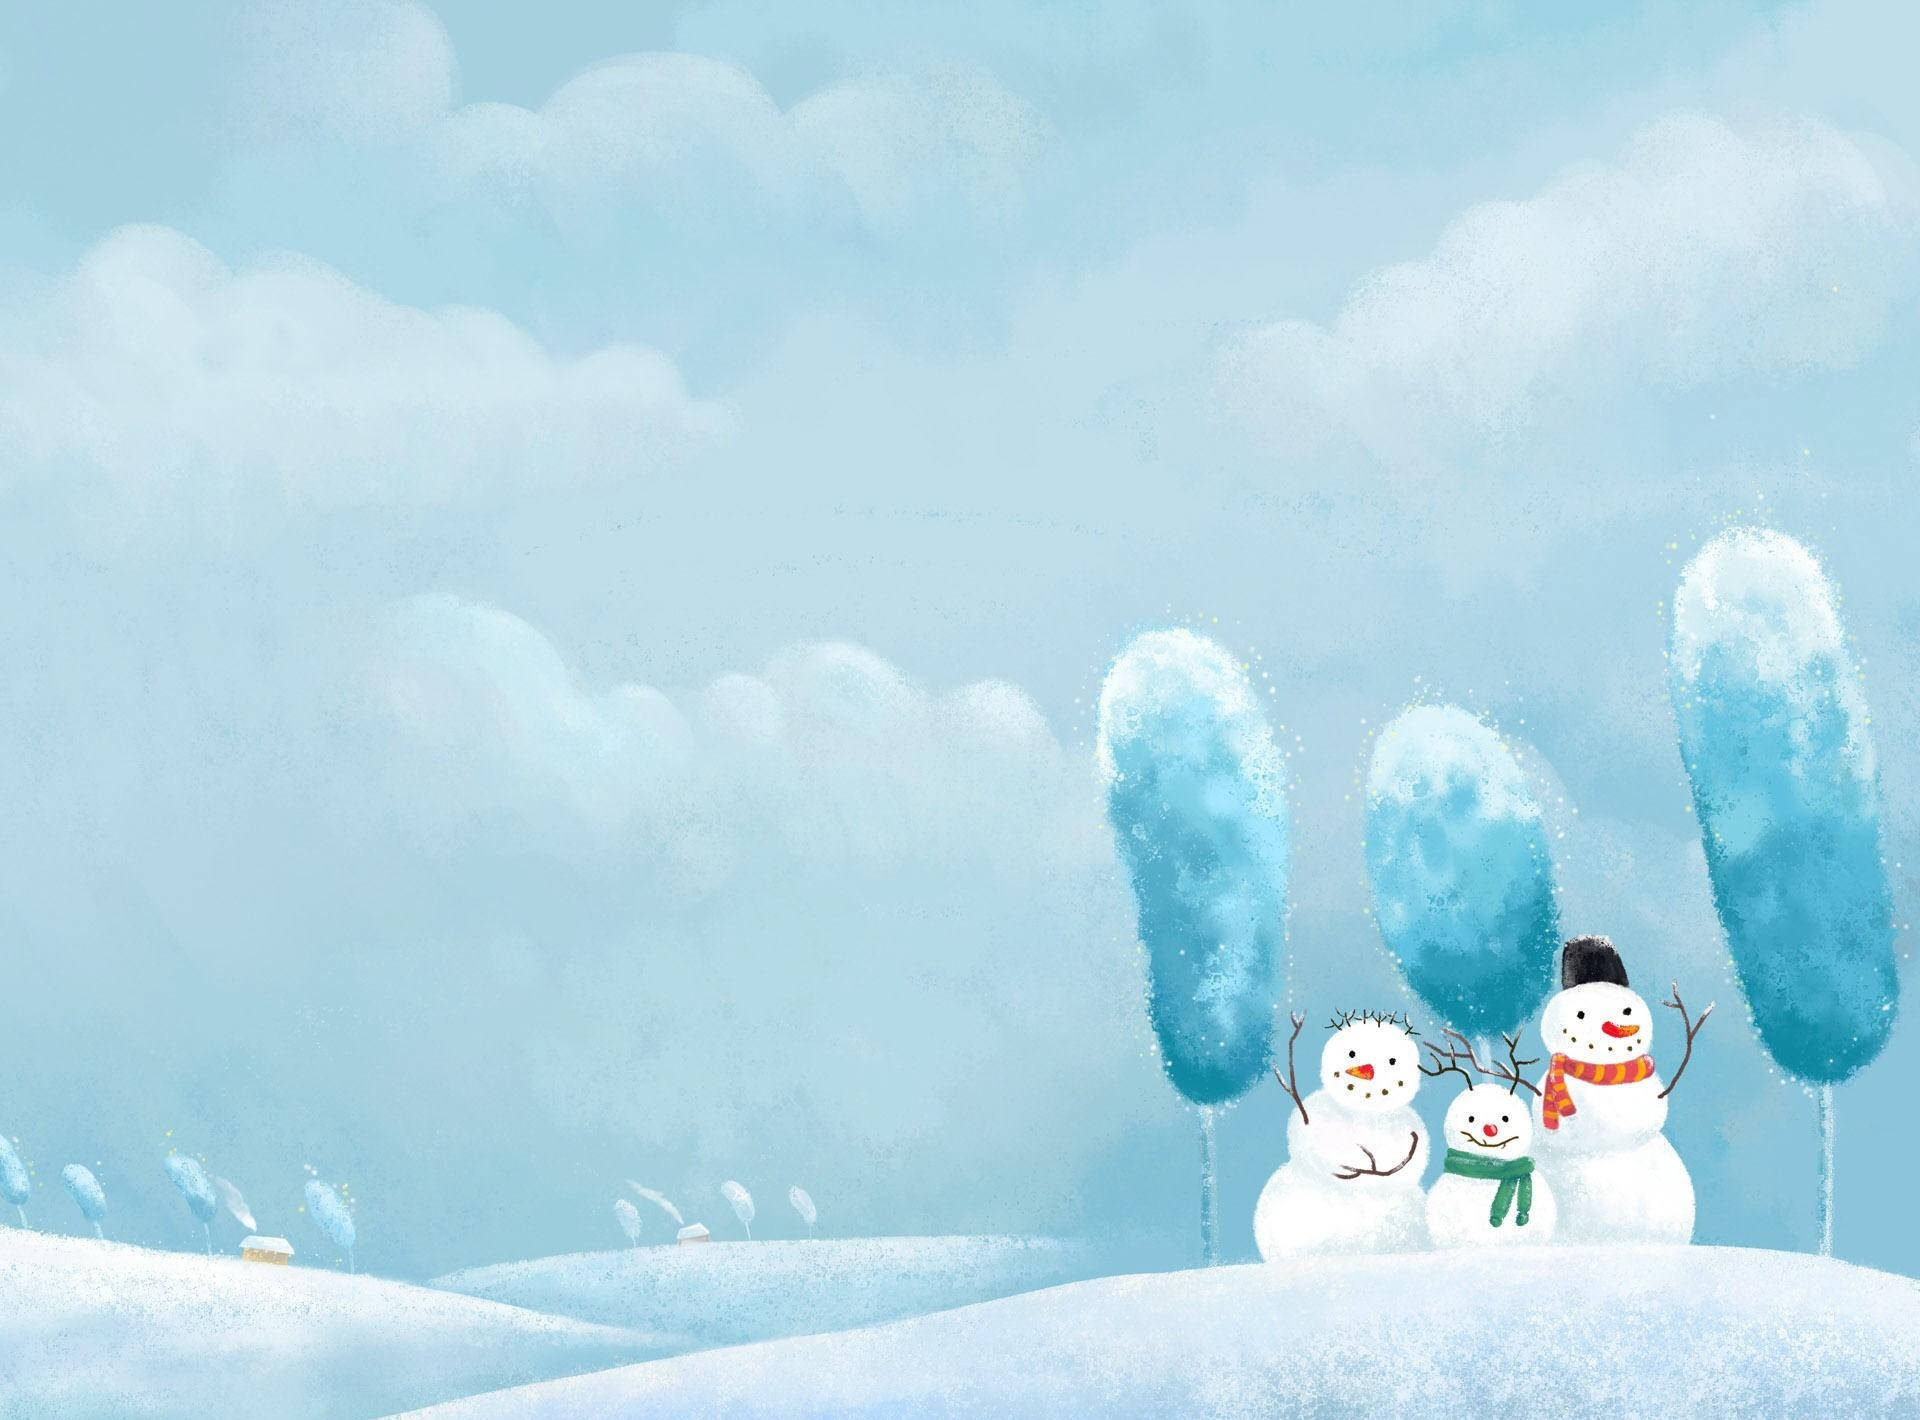 Three Snowmen Friends Background